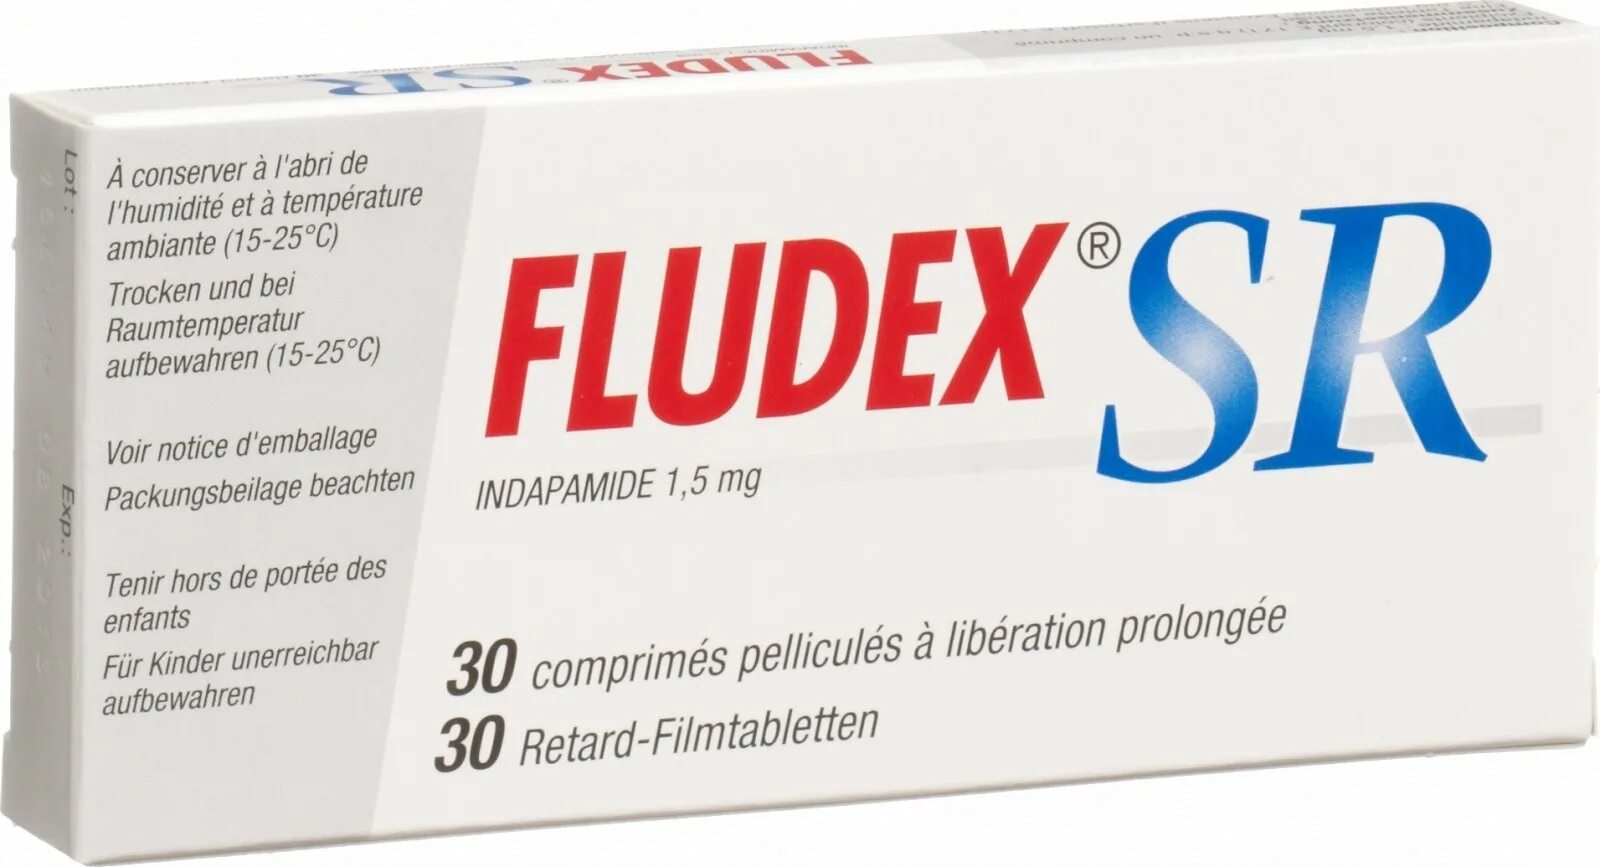 FLUDEX SR. FLUDEX 1.5 MG. FLUDEX 2,5. Таблетки FLUDEX SR. Арифам 5 1.5 купить